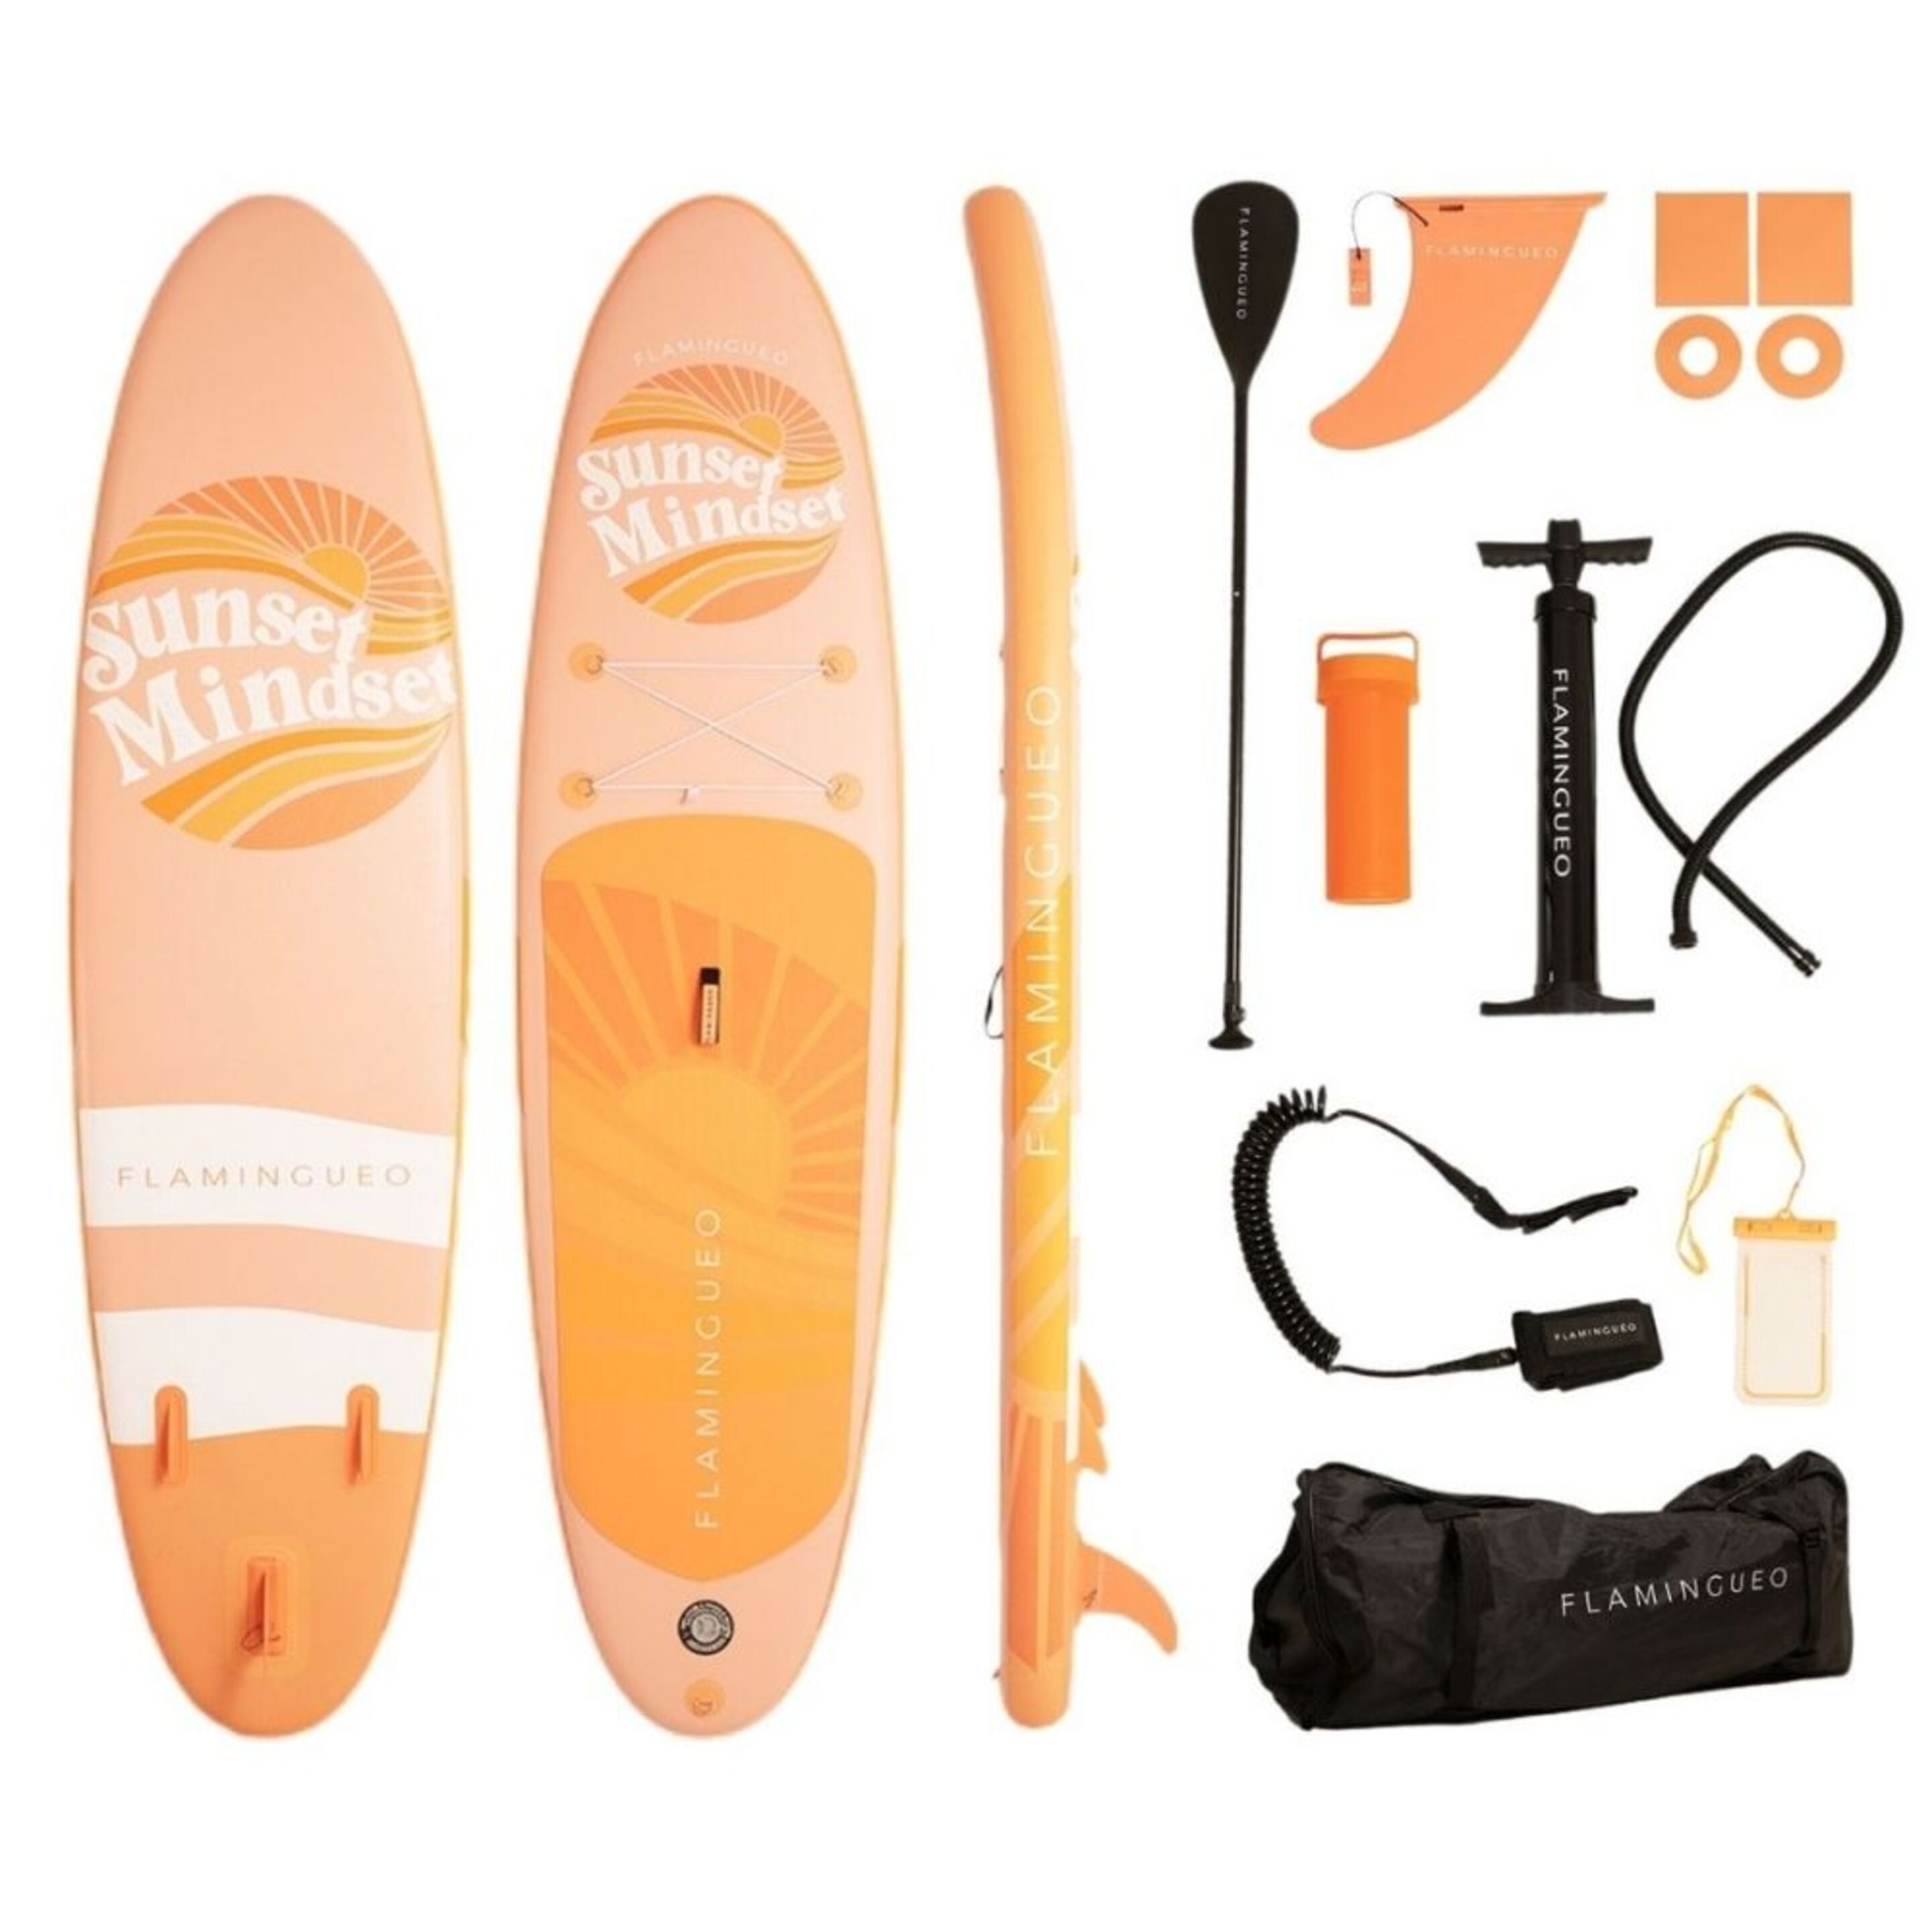 Tabla Paddle Surf Sunset Minded Kit Completo - naranja-albaricoque - 